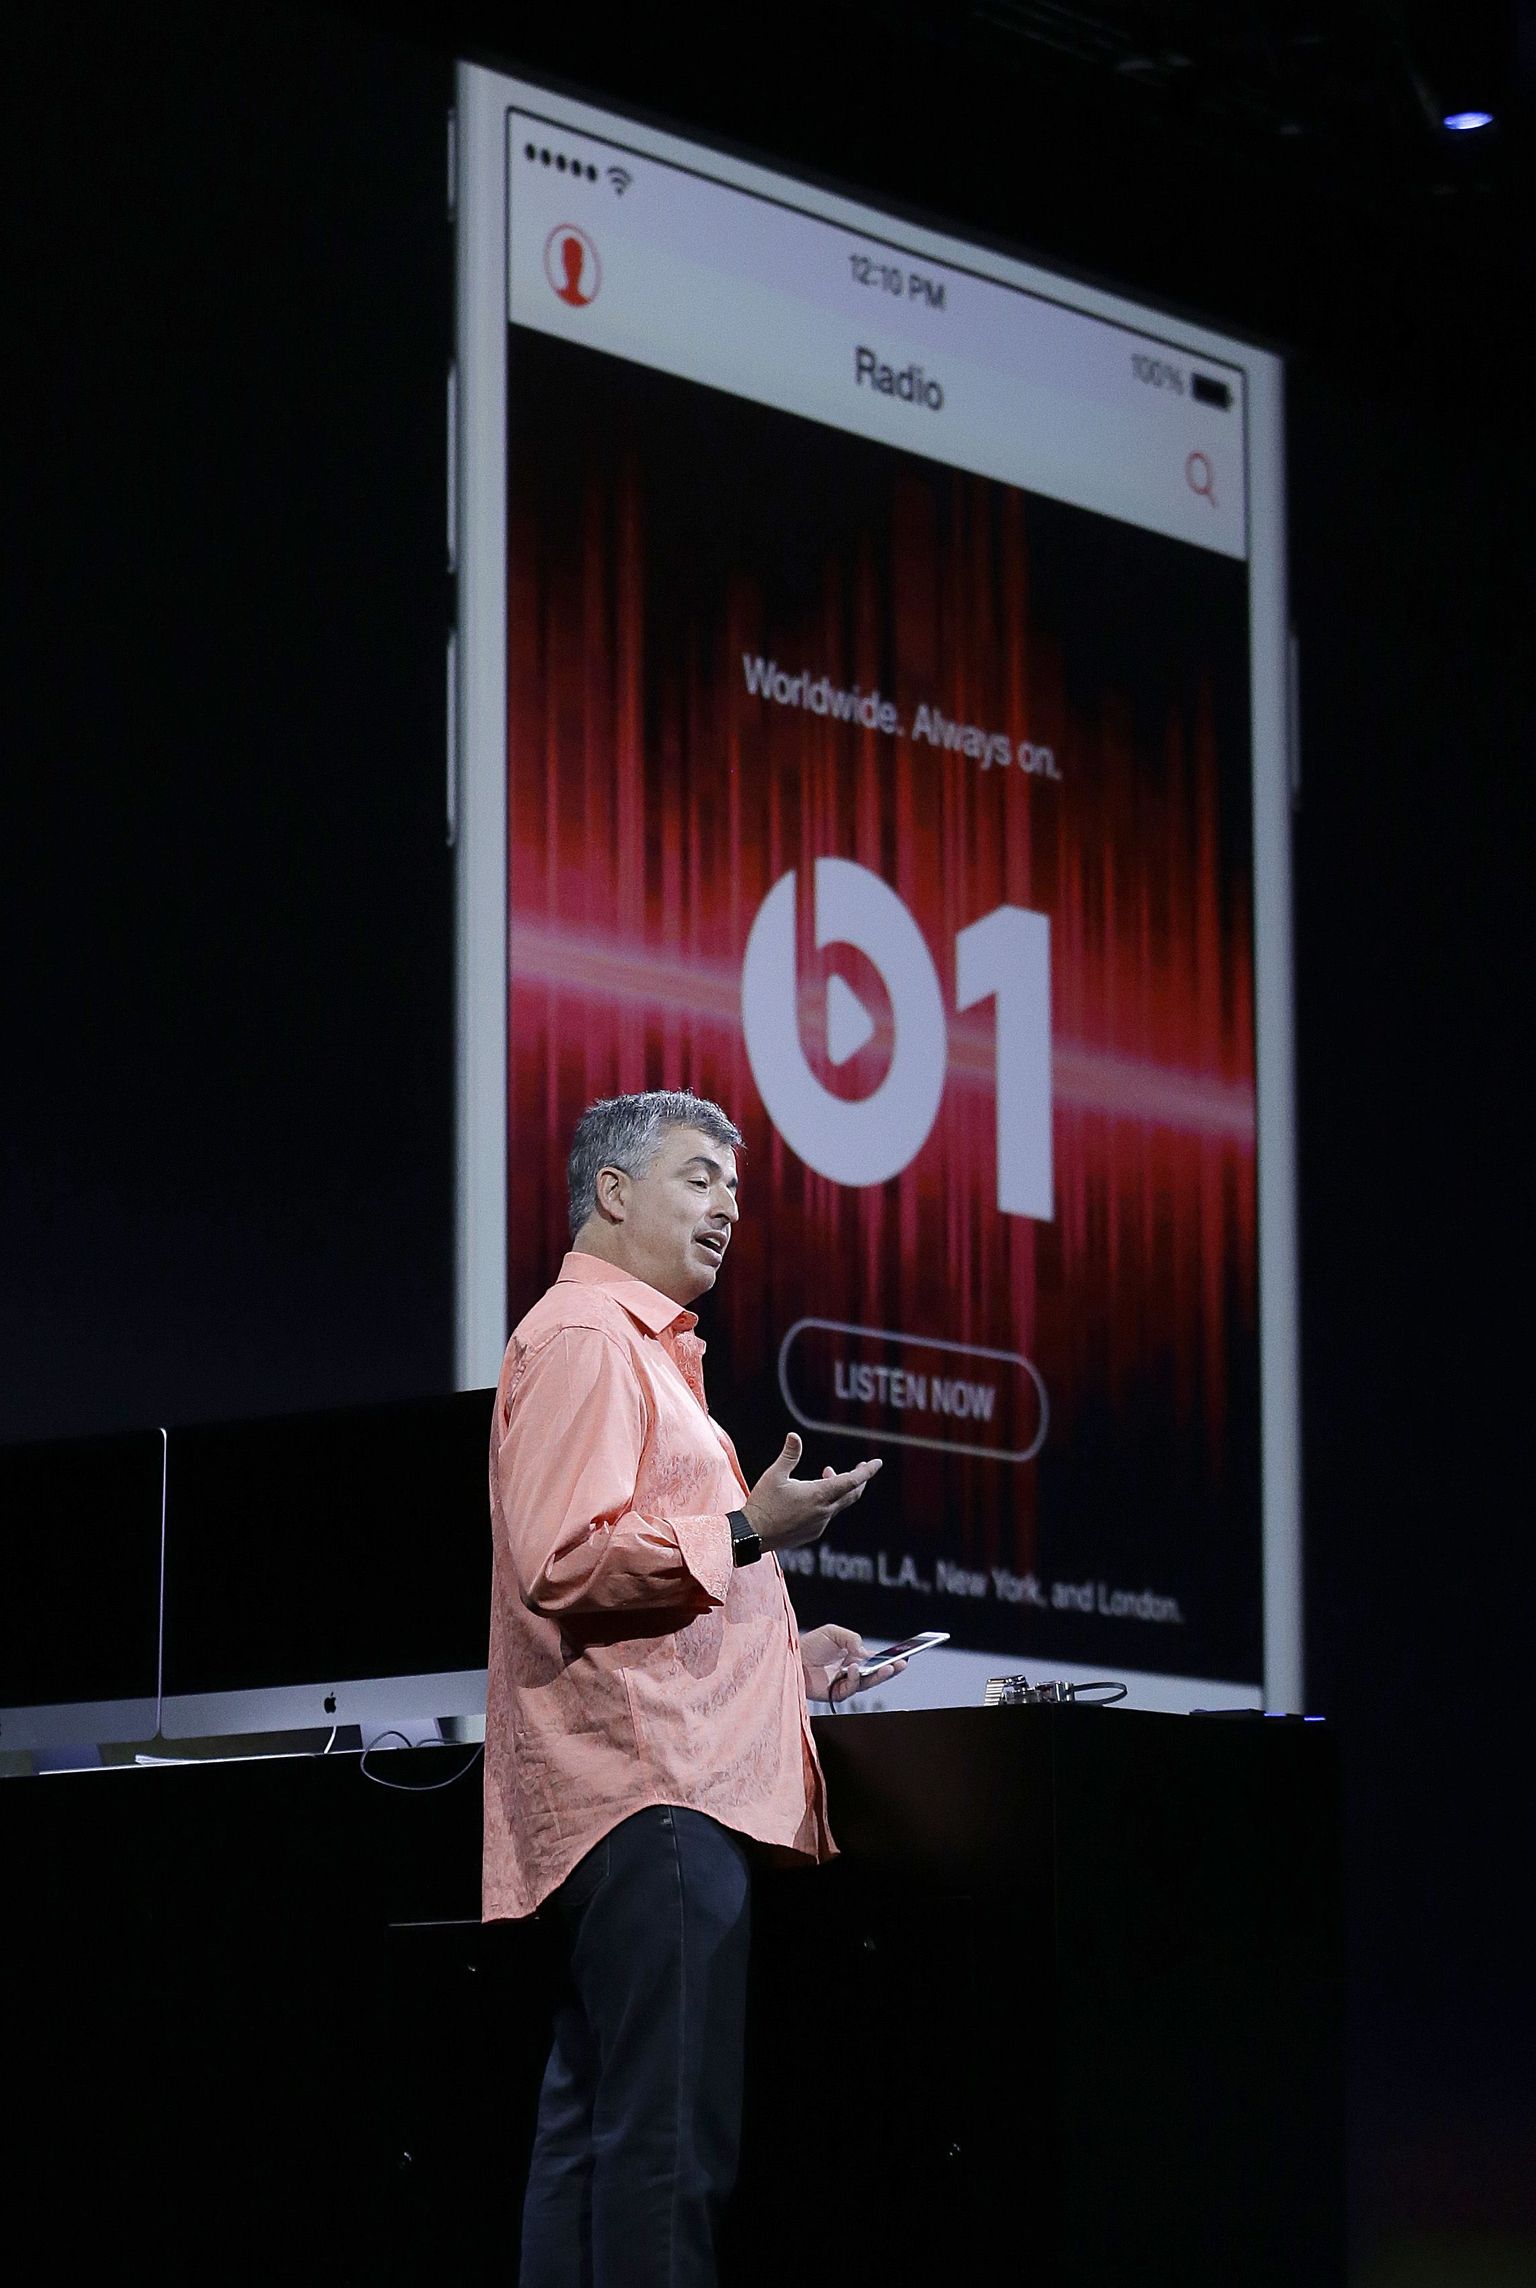 Apple’i juhtivtöötaja Eddy Cue esitlemas Beats 1 raadiot, mis saanud Apple Musicu üheks tõmbenumbriks.